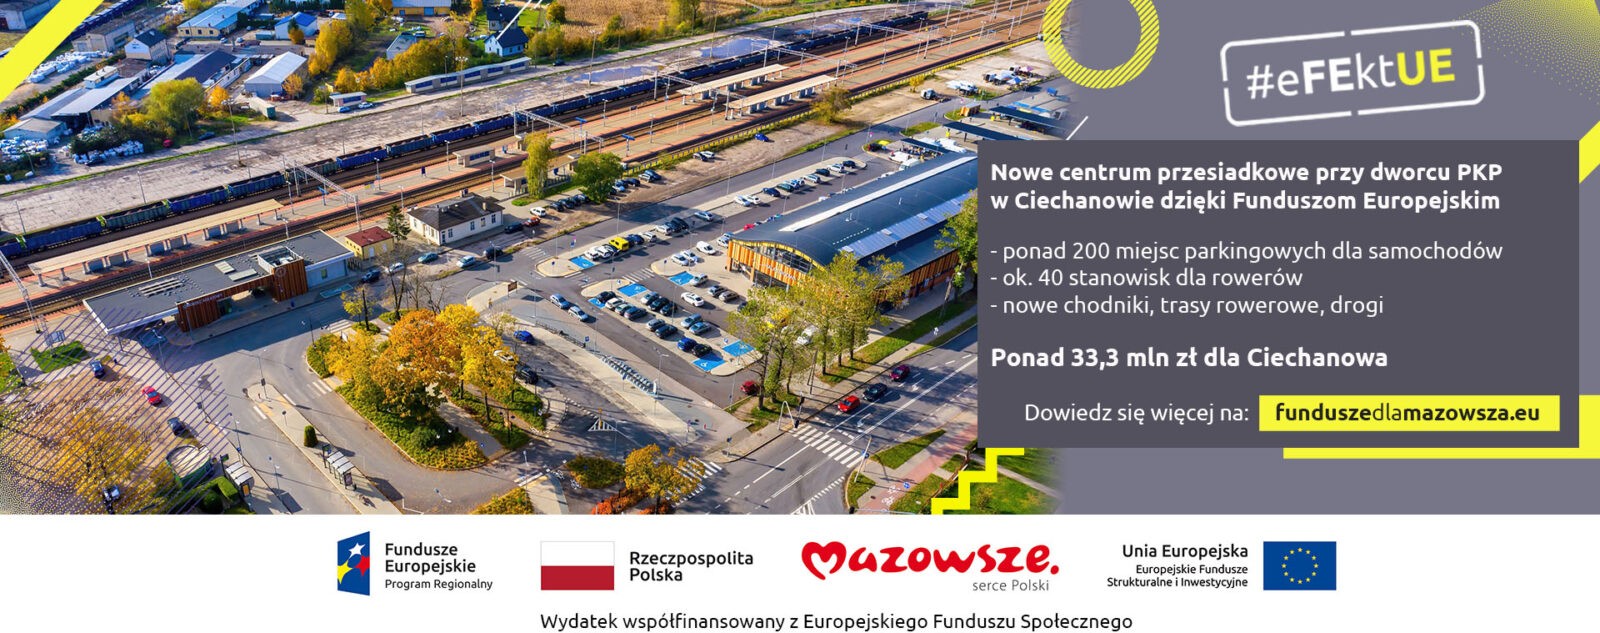 Fundusze europejskie wspierają rozwój transportu zbiorowego na Mazowszu